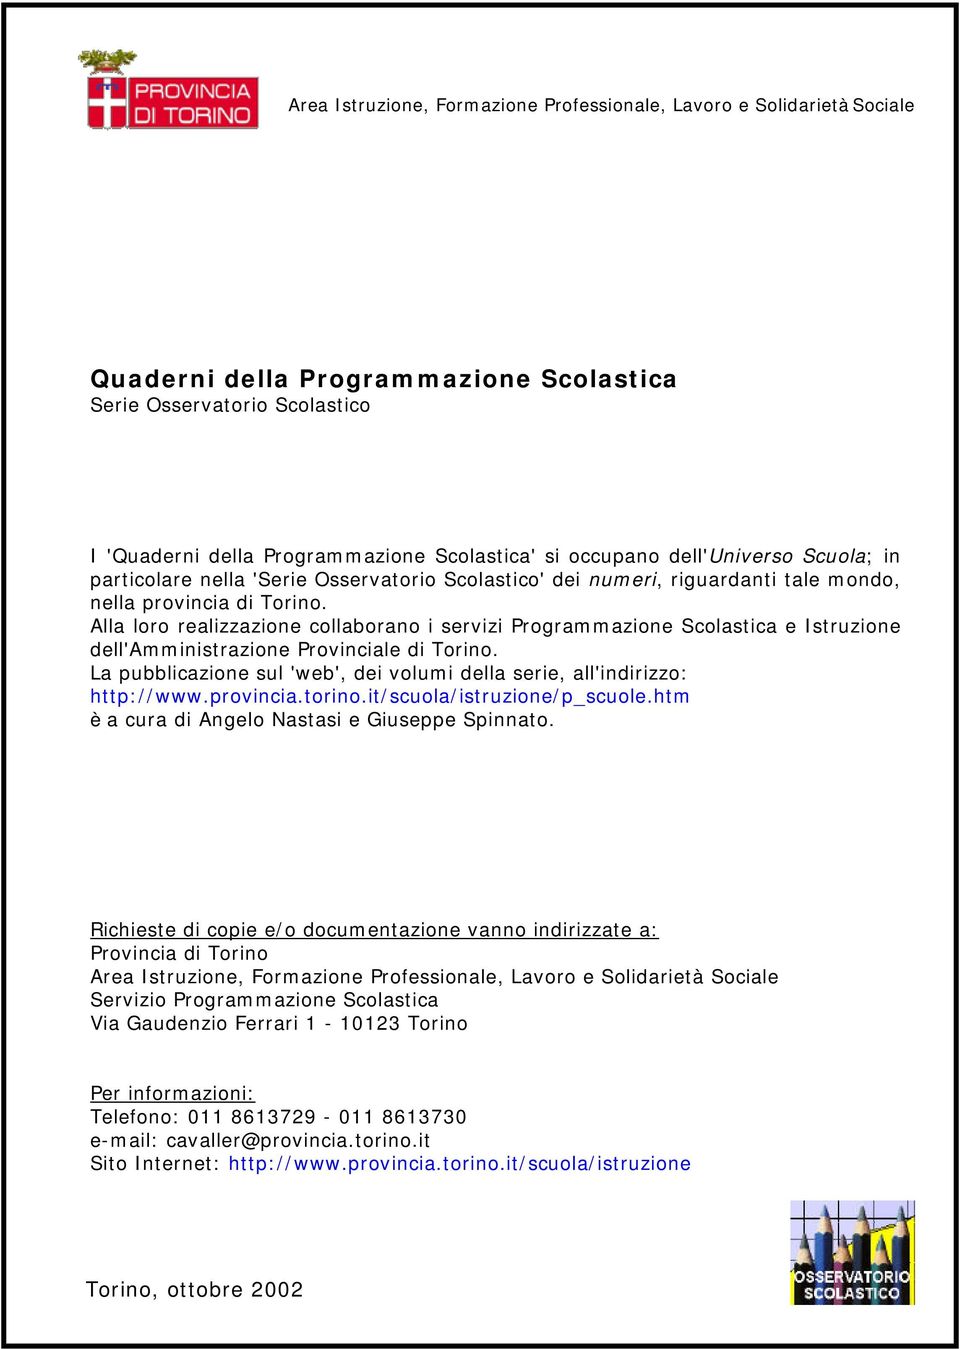 Alla loro realizzazione collaborano i servizi Programmazione Scolastica e Istruzione dell'amministrazione Provinciale di Torino.